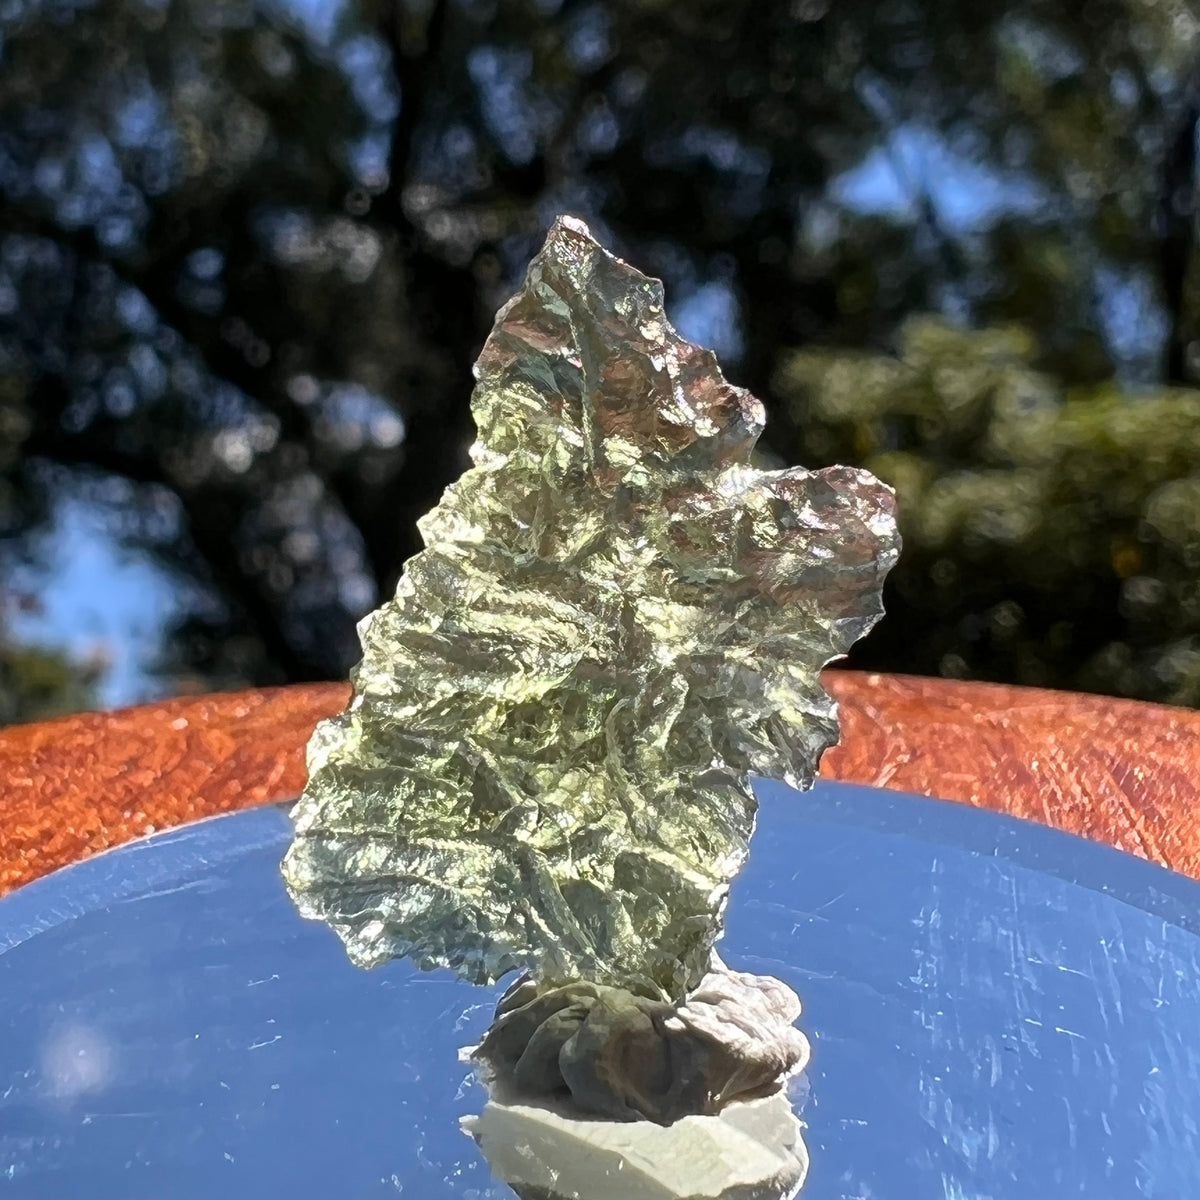 Besednice Moldavite 1.25 grams #486-Moldavite Life